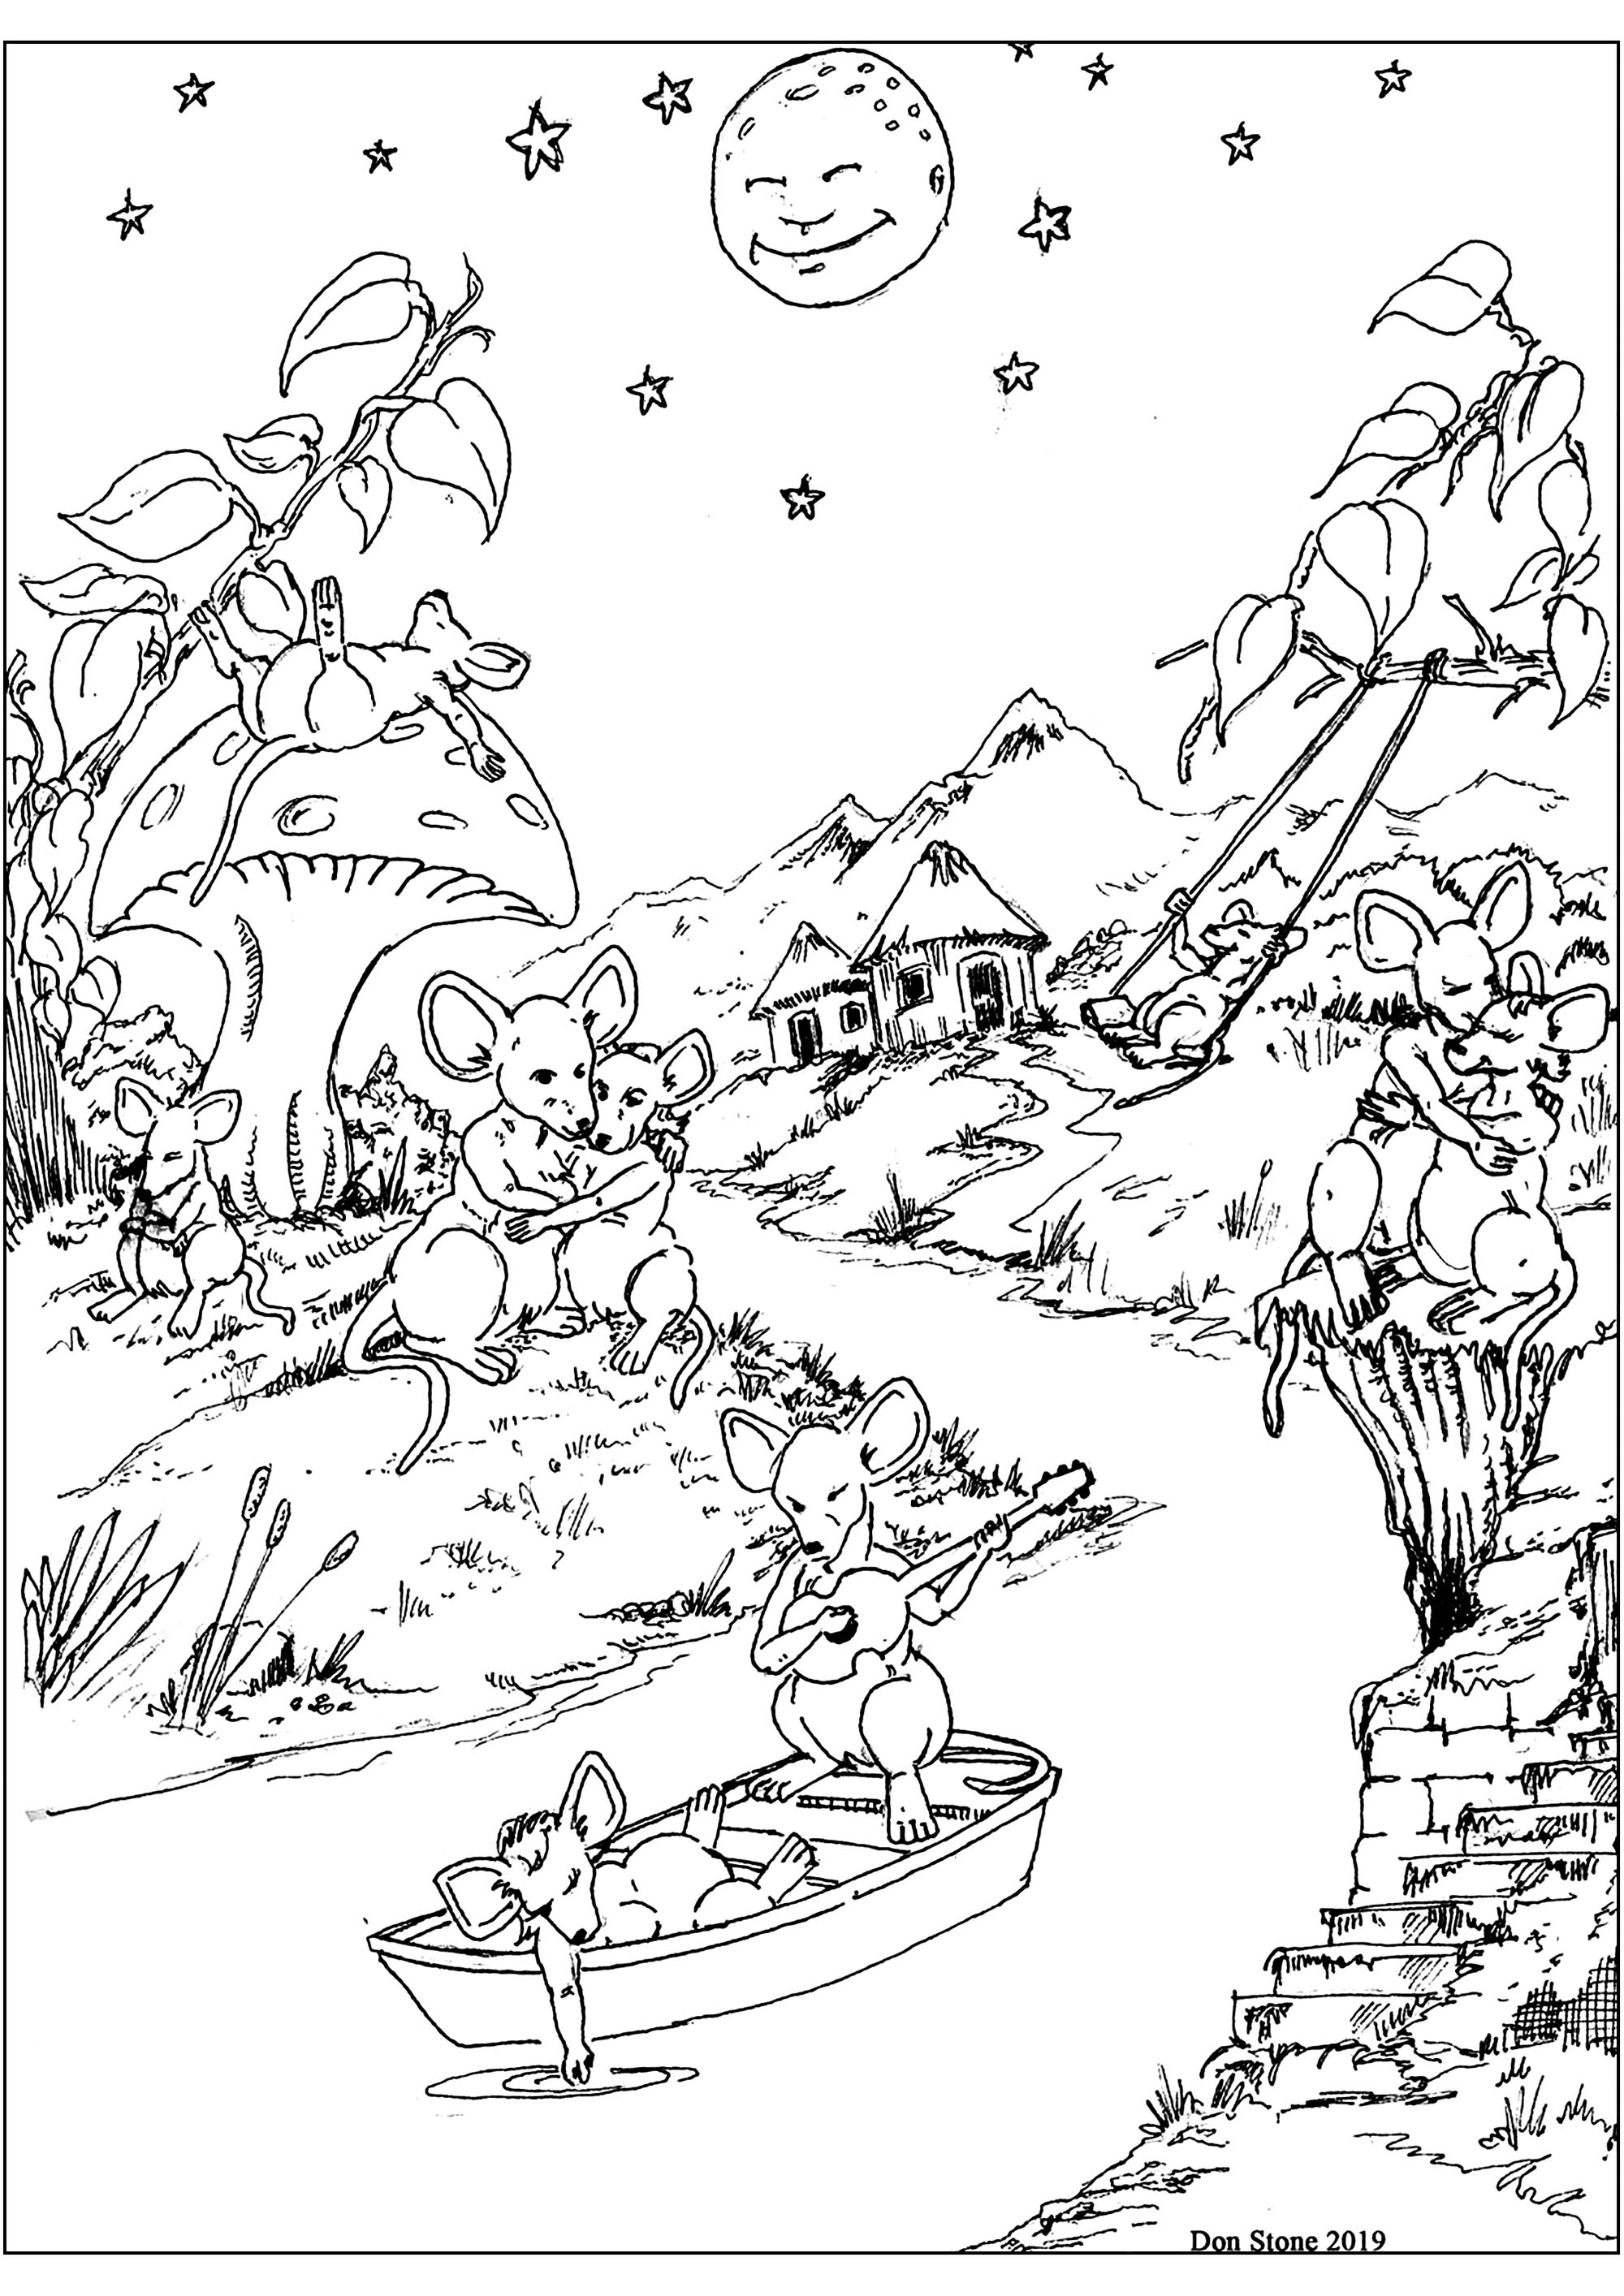 Desenho original de um belo rio com ratos num barco, nas margens e num cogumelo, Artista : Don Stone